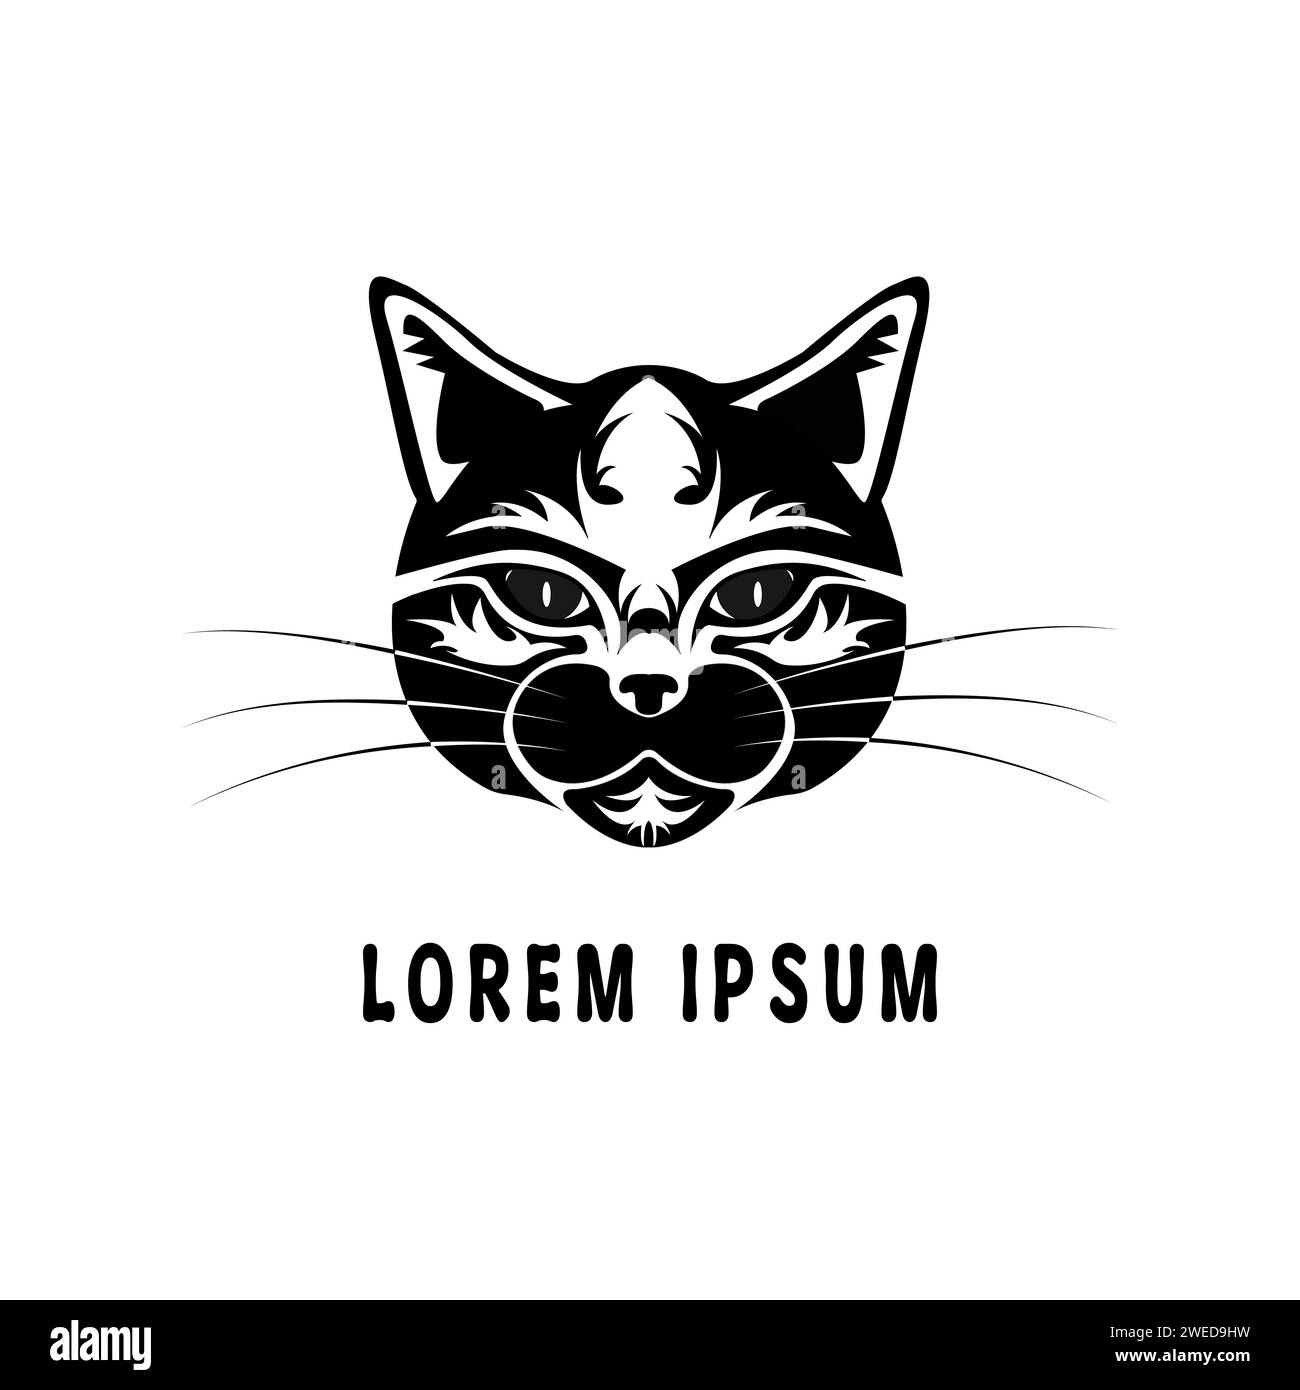 Disegno illustrativo del logo del gatto in bianco e nero Illustrazione Vettoriale